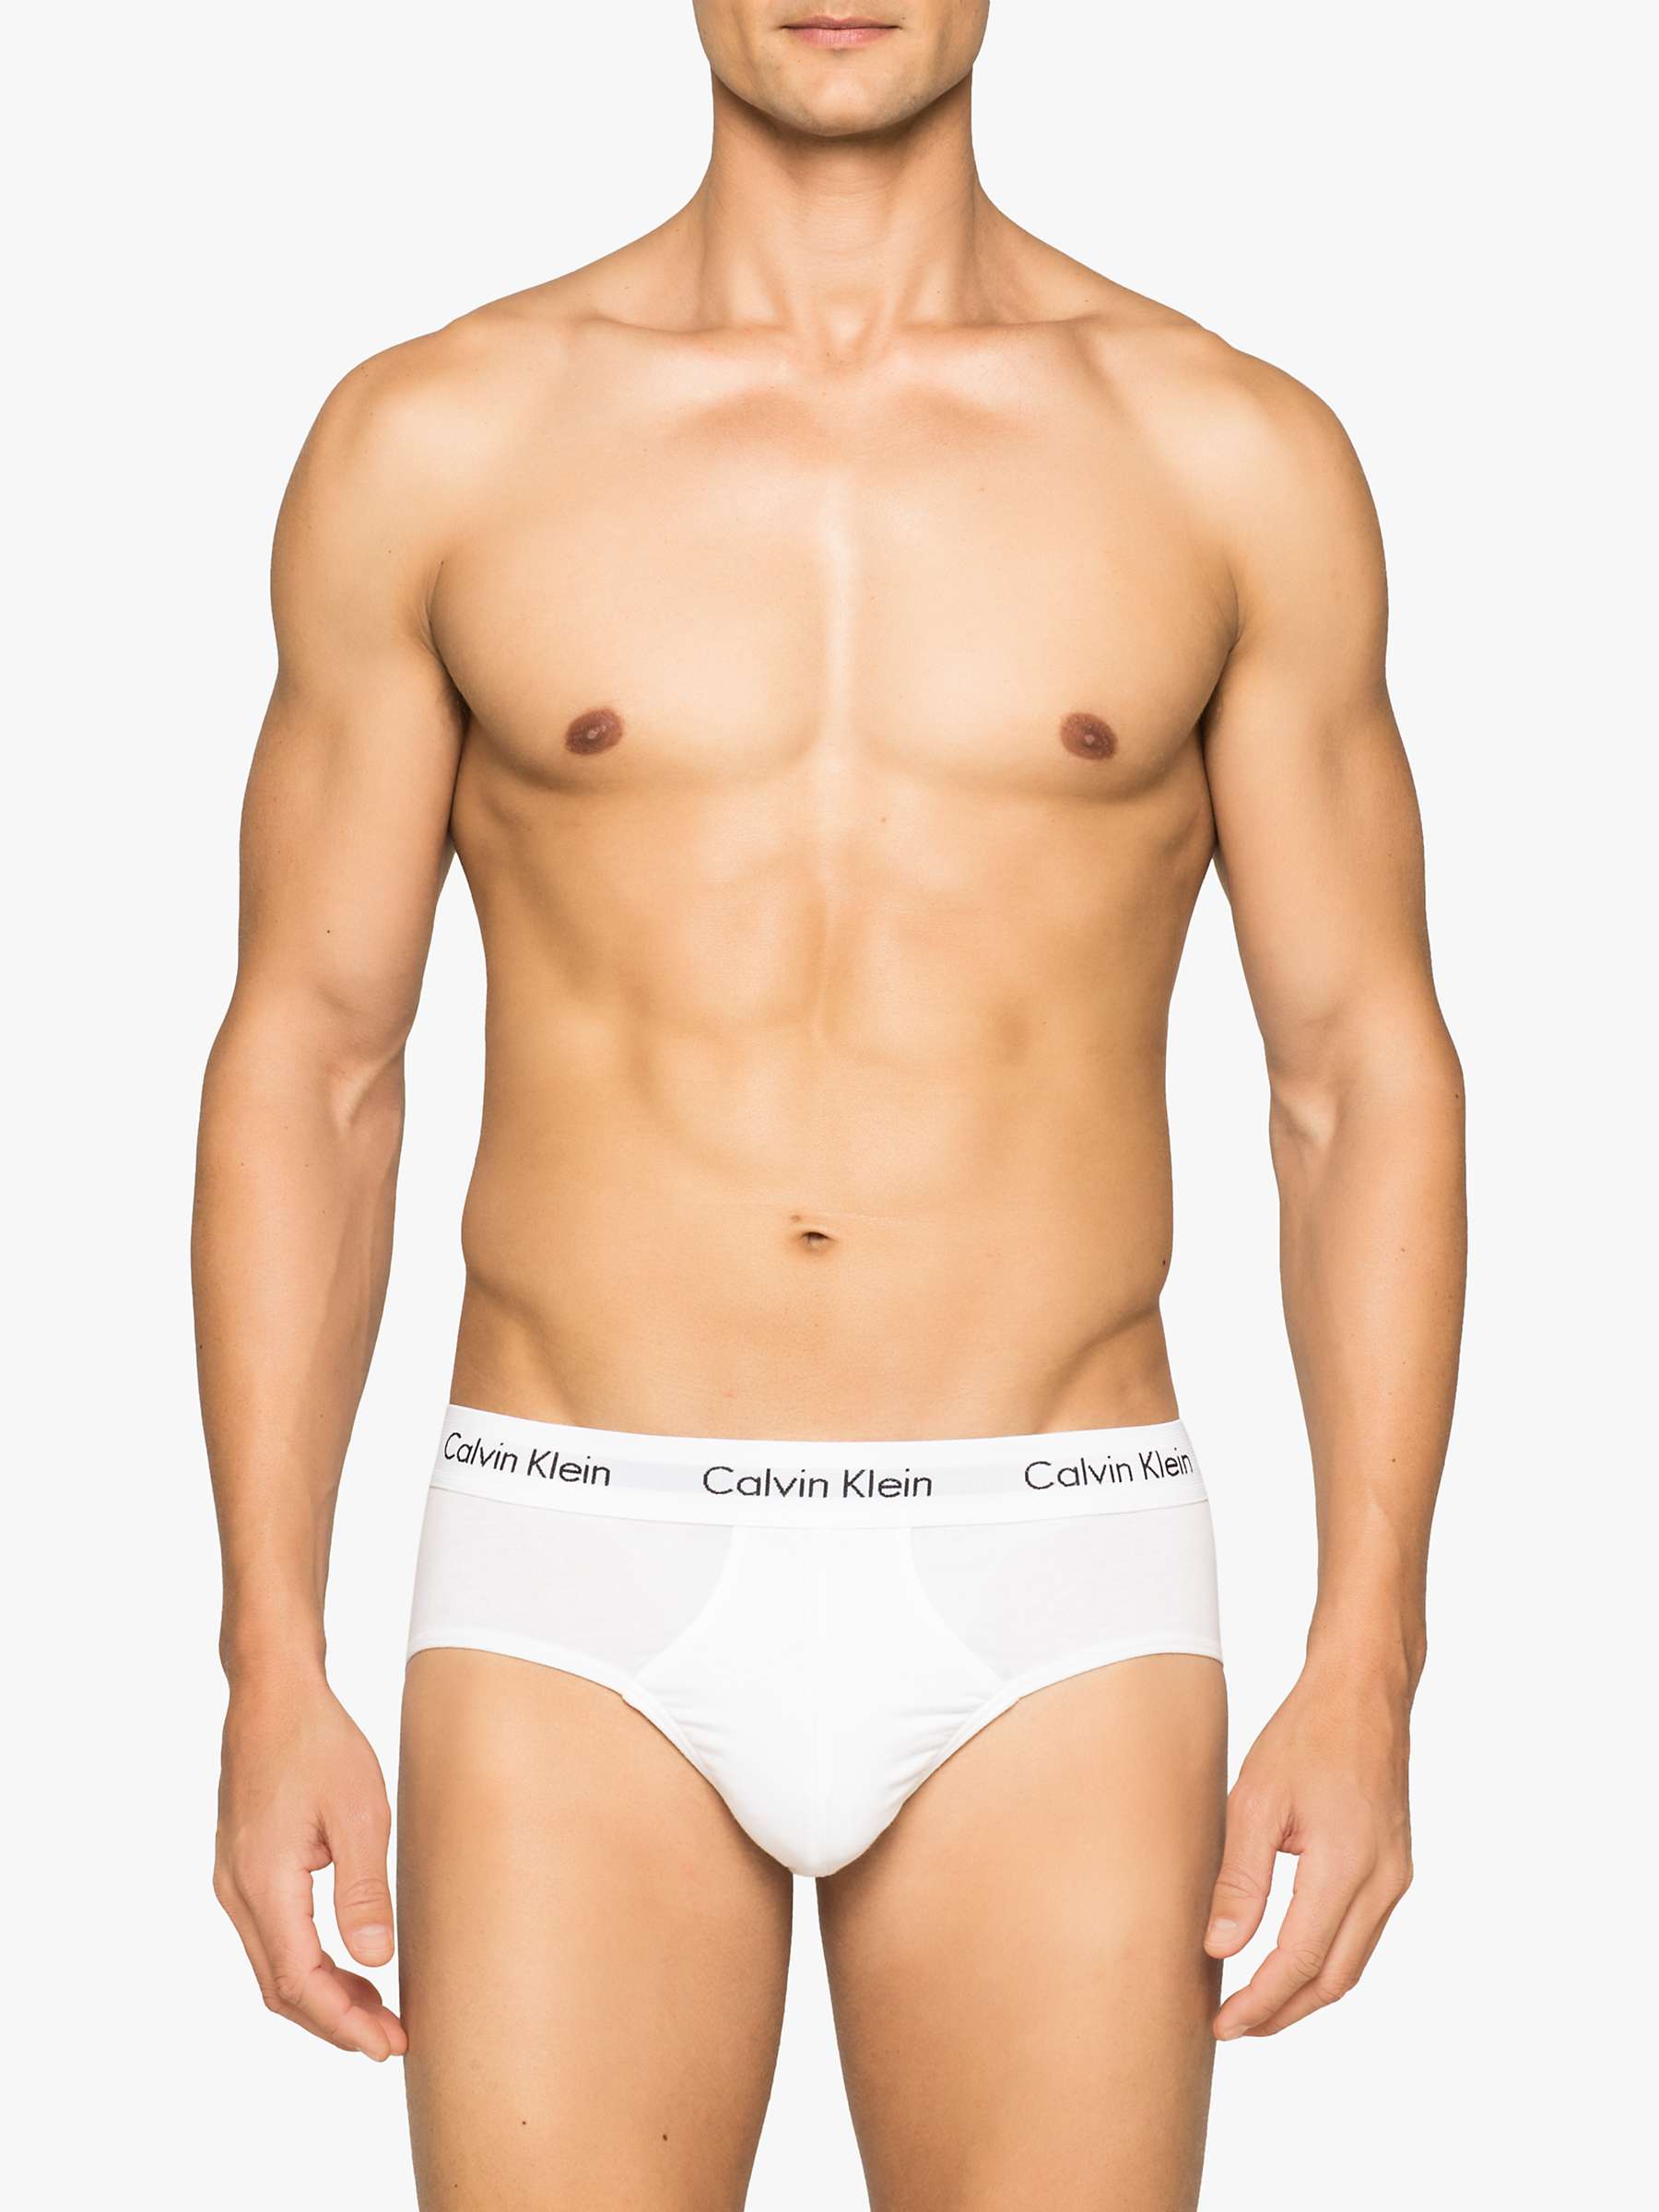 Buy Calvin Klein Underwear Cotton Briefs, Pack of 3 Online at johnlewis.com